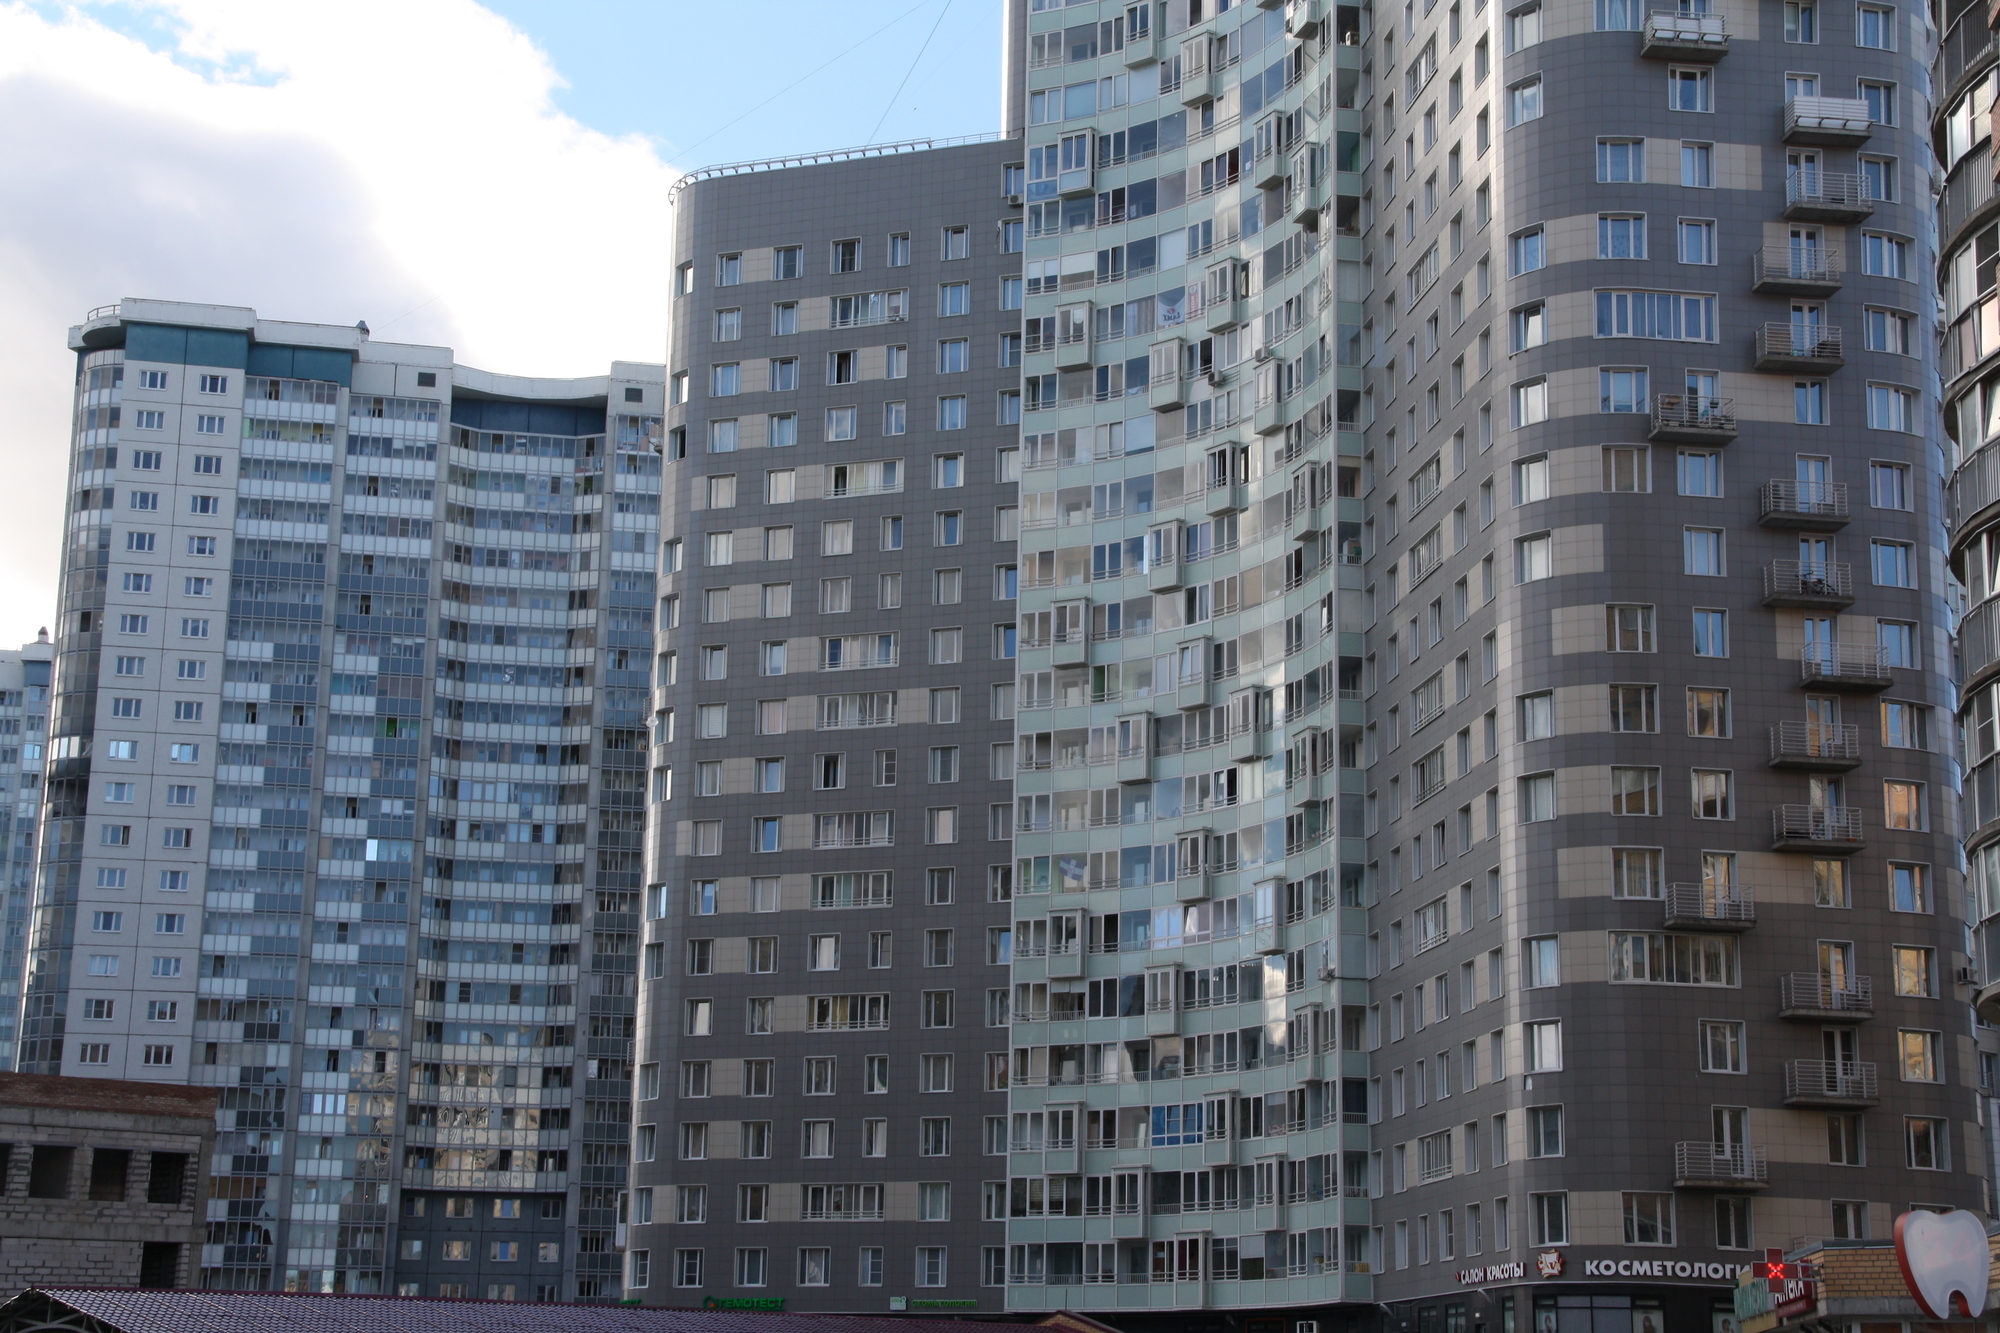 Названы самые дорогие районы Петербурга по ценам на вторичную недвижимость